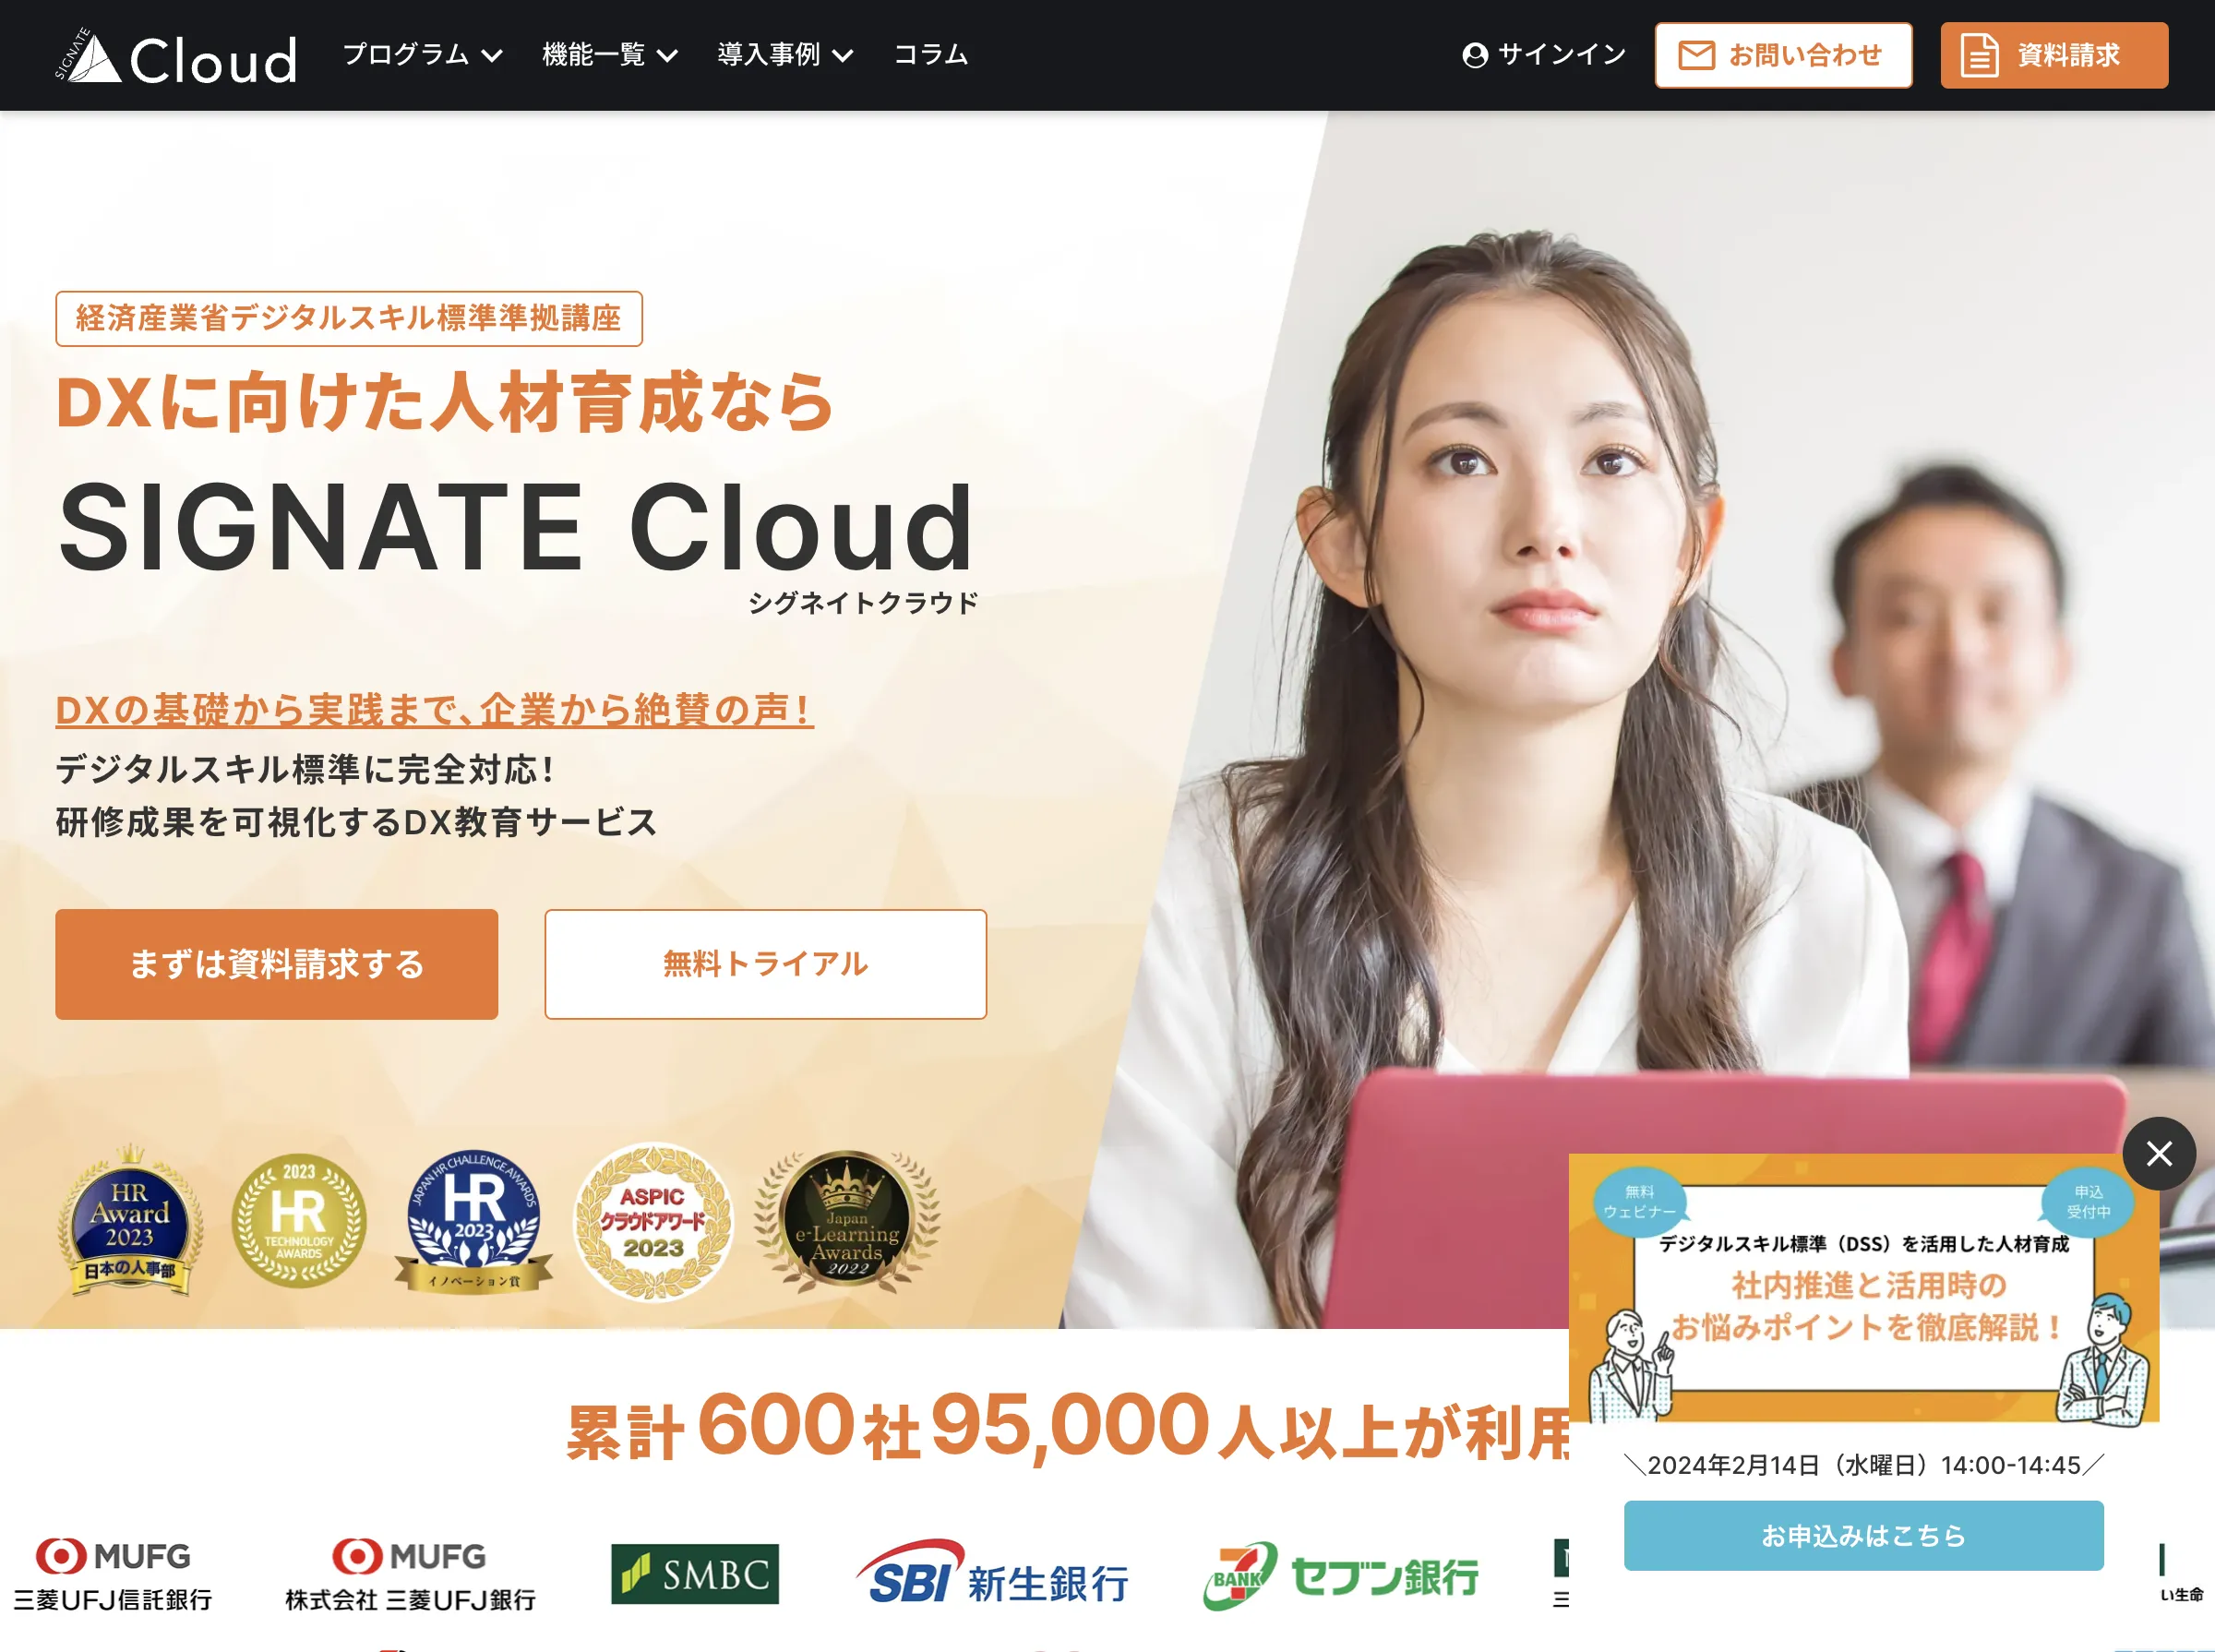 SIGNATE Cloud(株式会社SIGNATE)